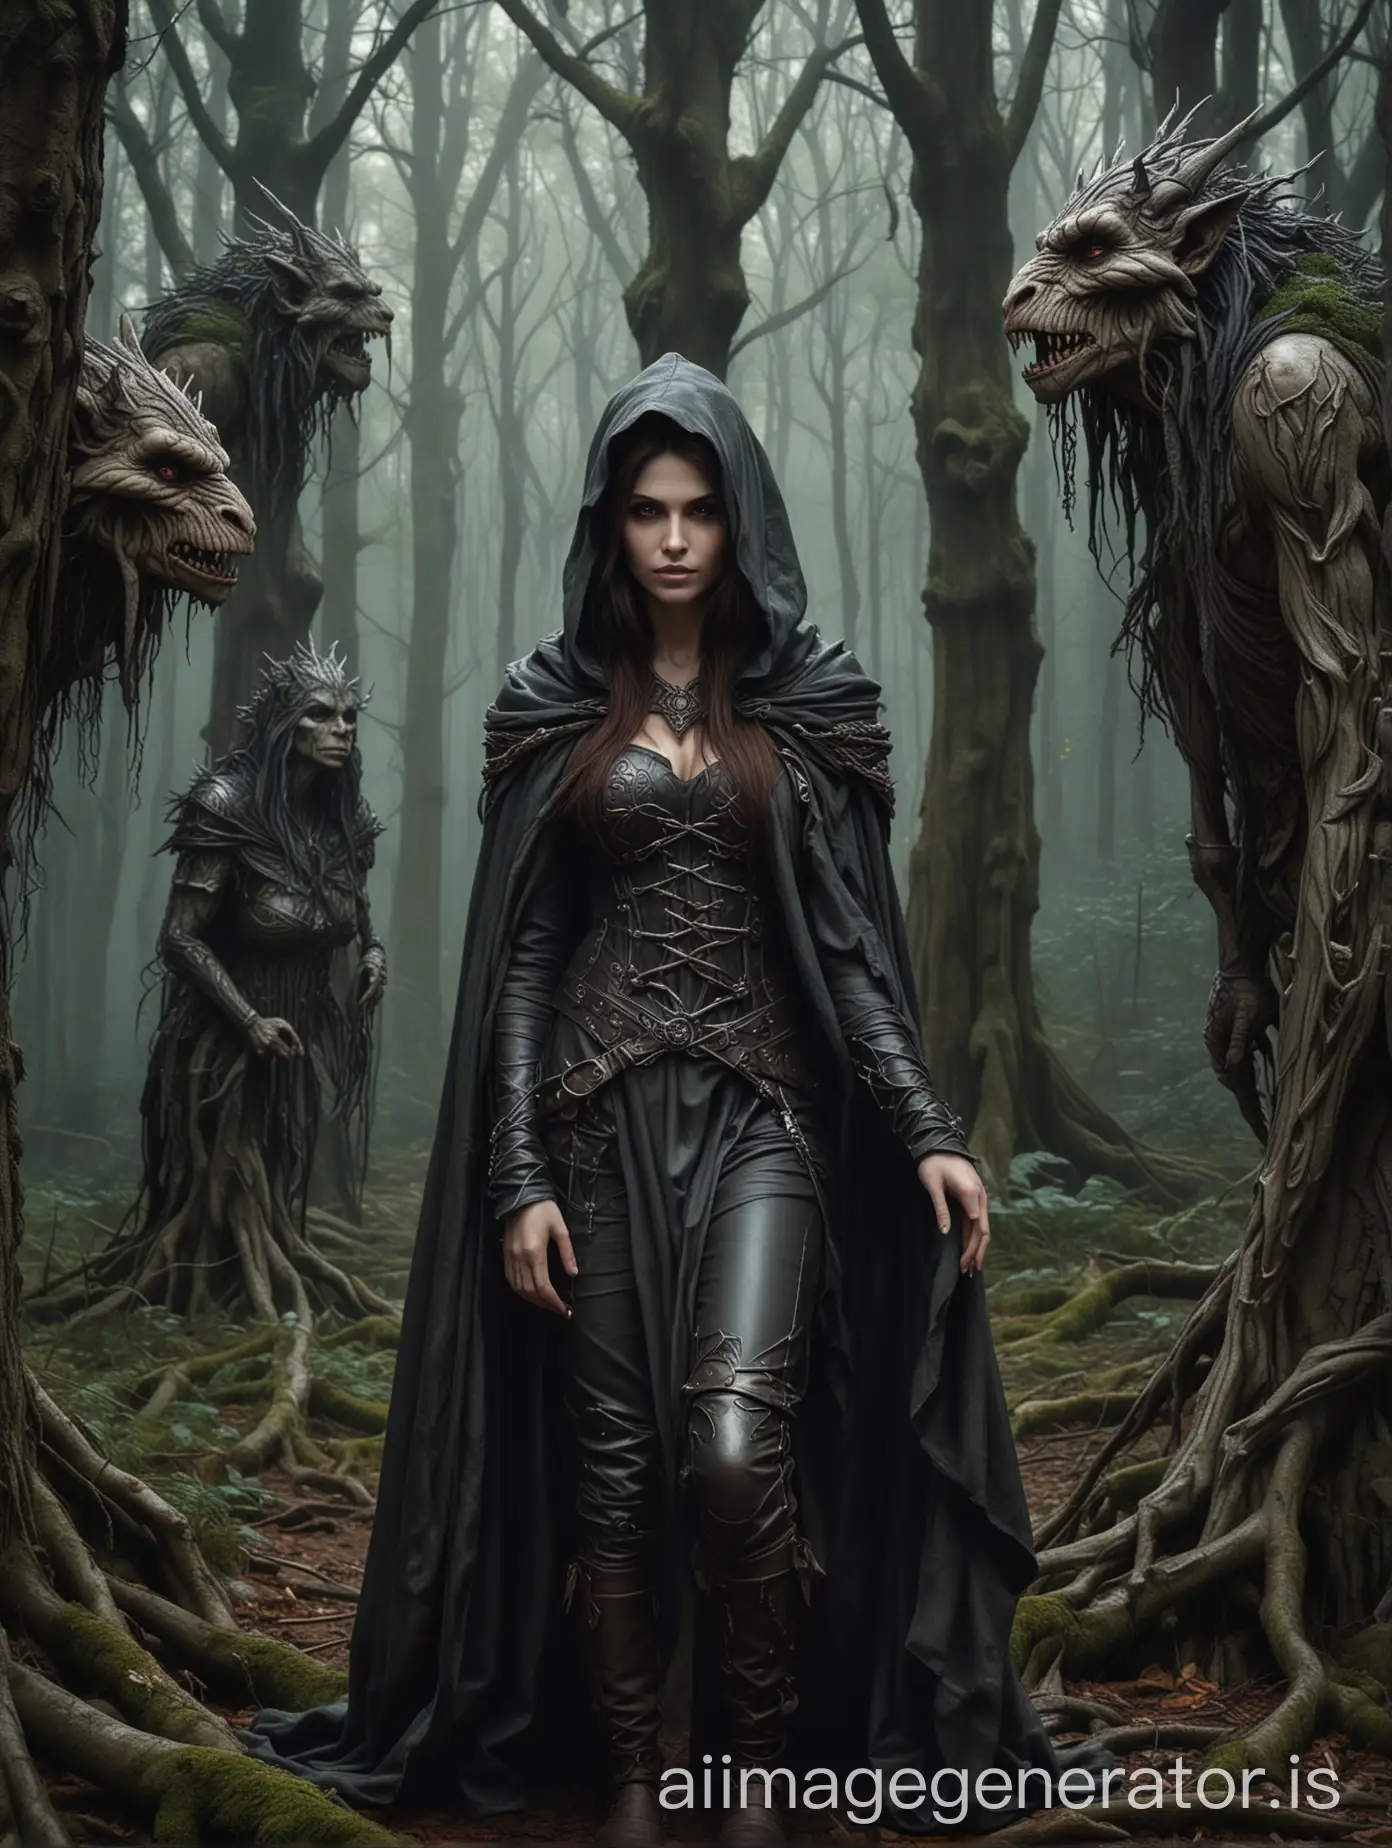 Medieval-Woman-in-Hood-Hiding-in-Dark-Woods-with-Troll